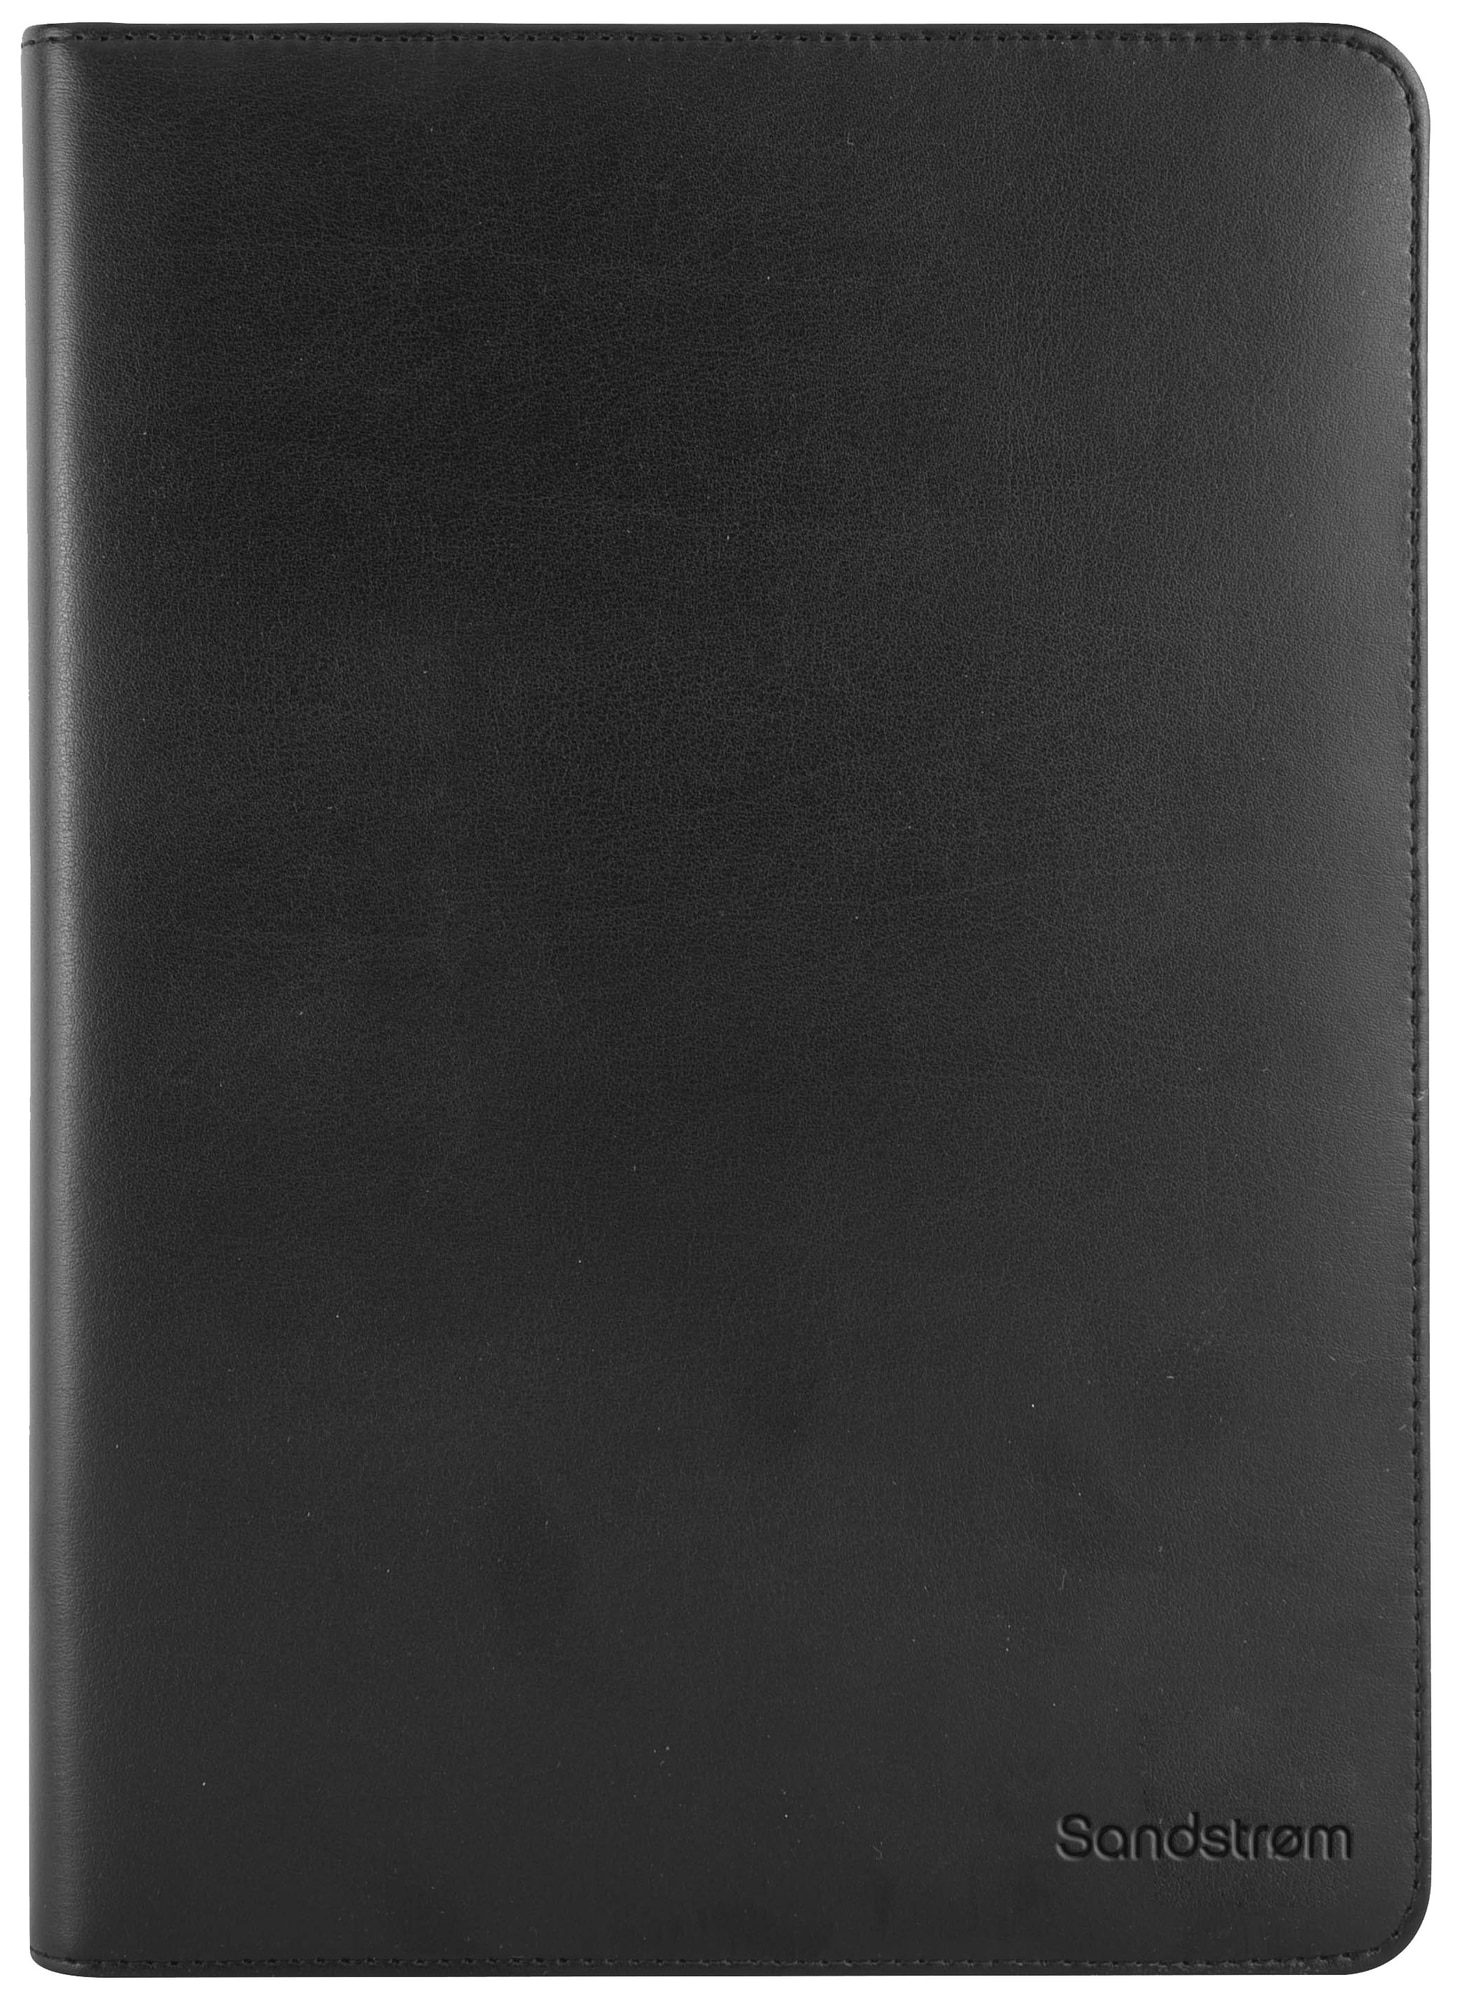 Sandstrøm lædercover til iPad 9.7"/ Air/Air 2/Pro 9.7 (sort) | Elgiganten